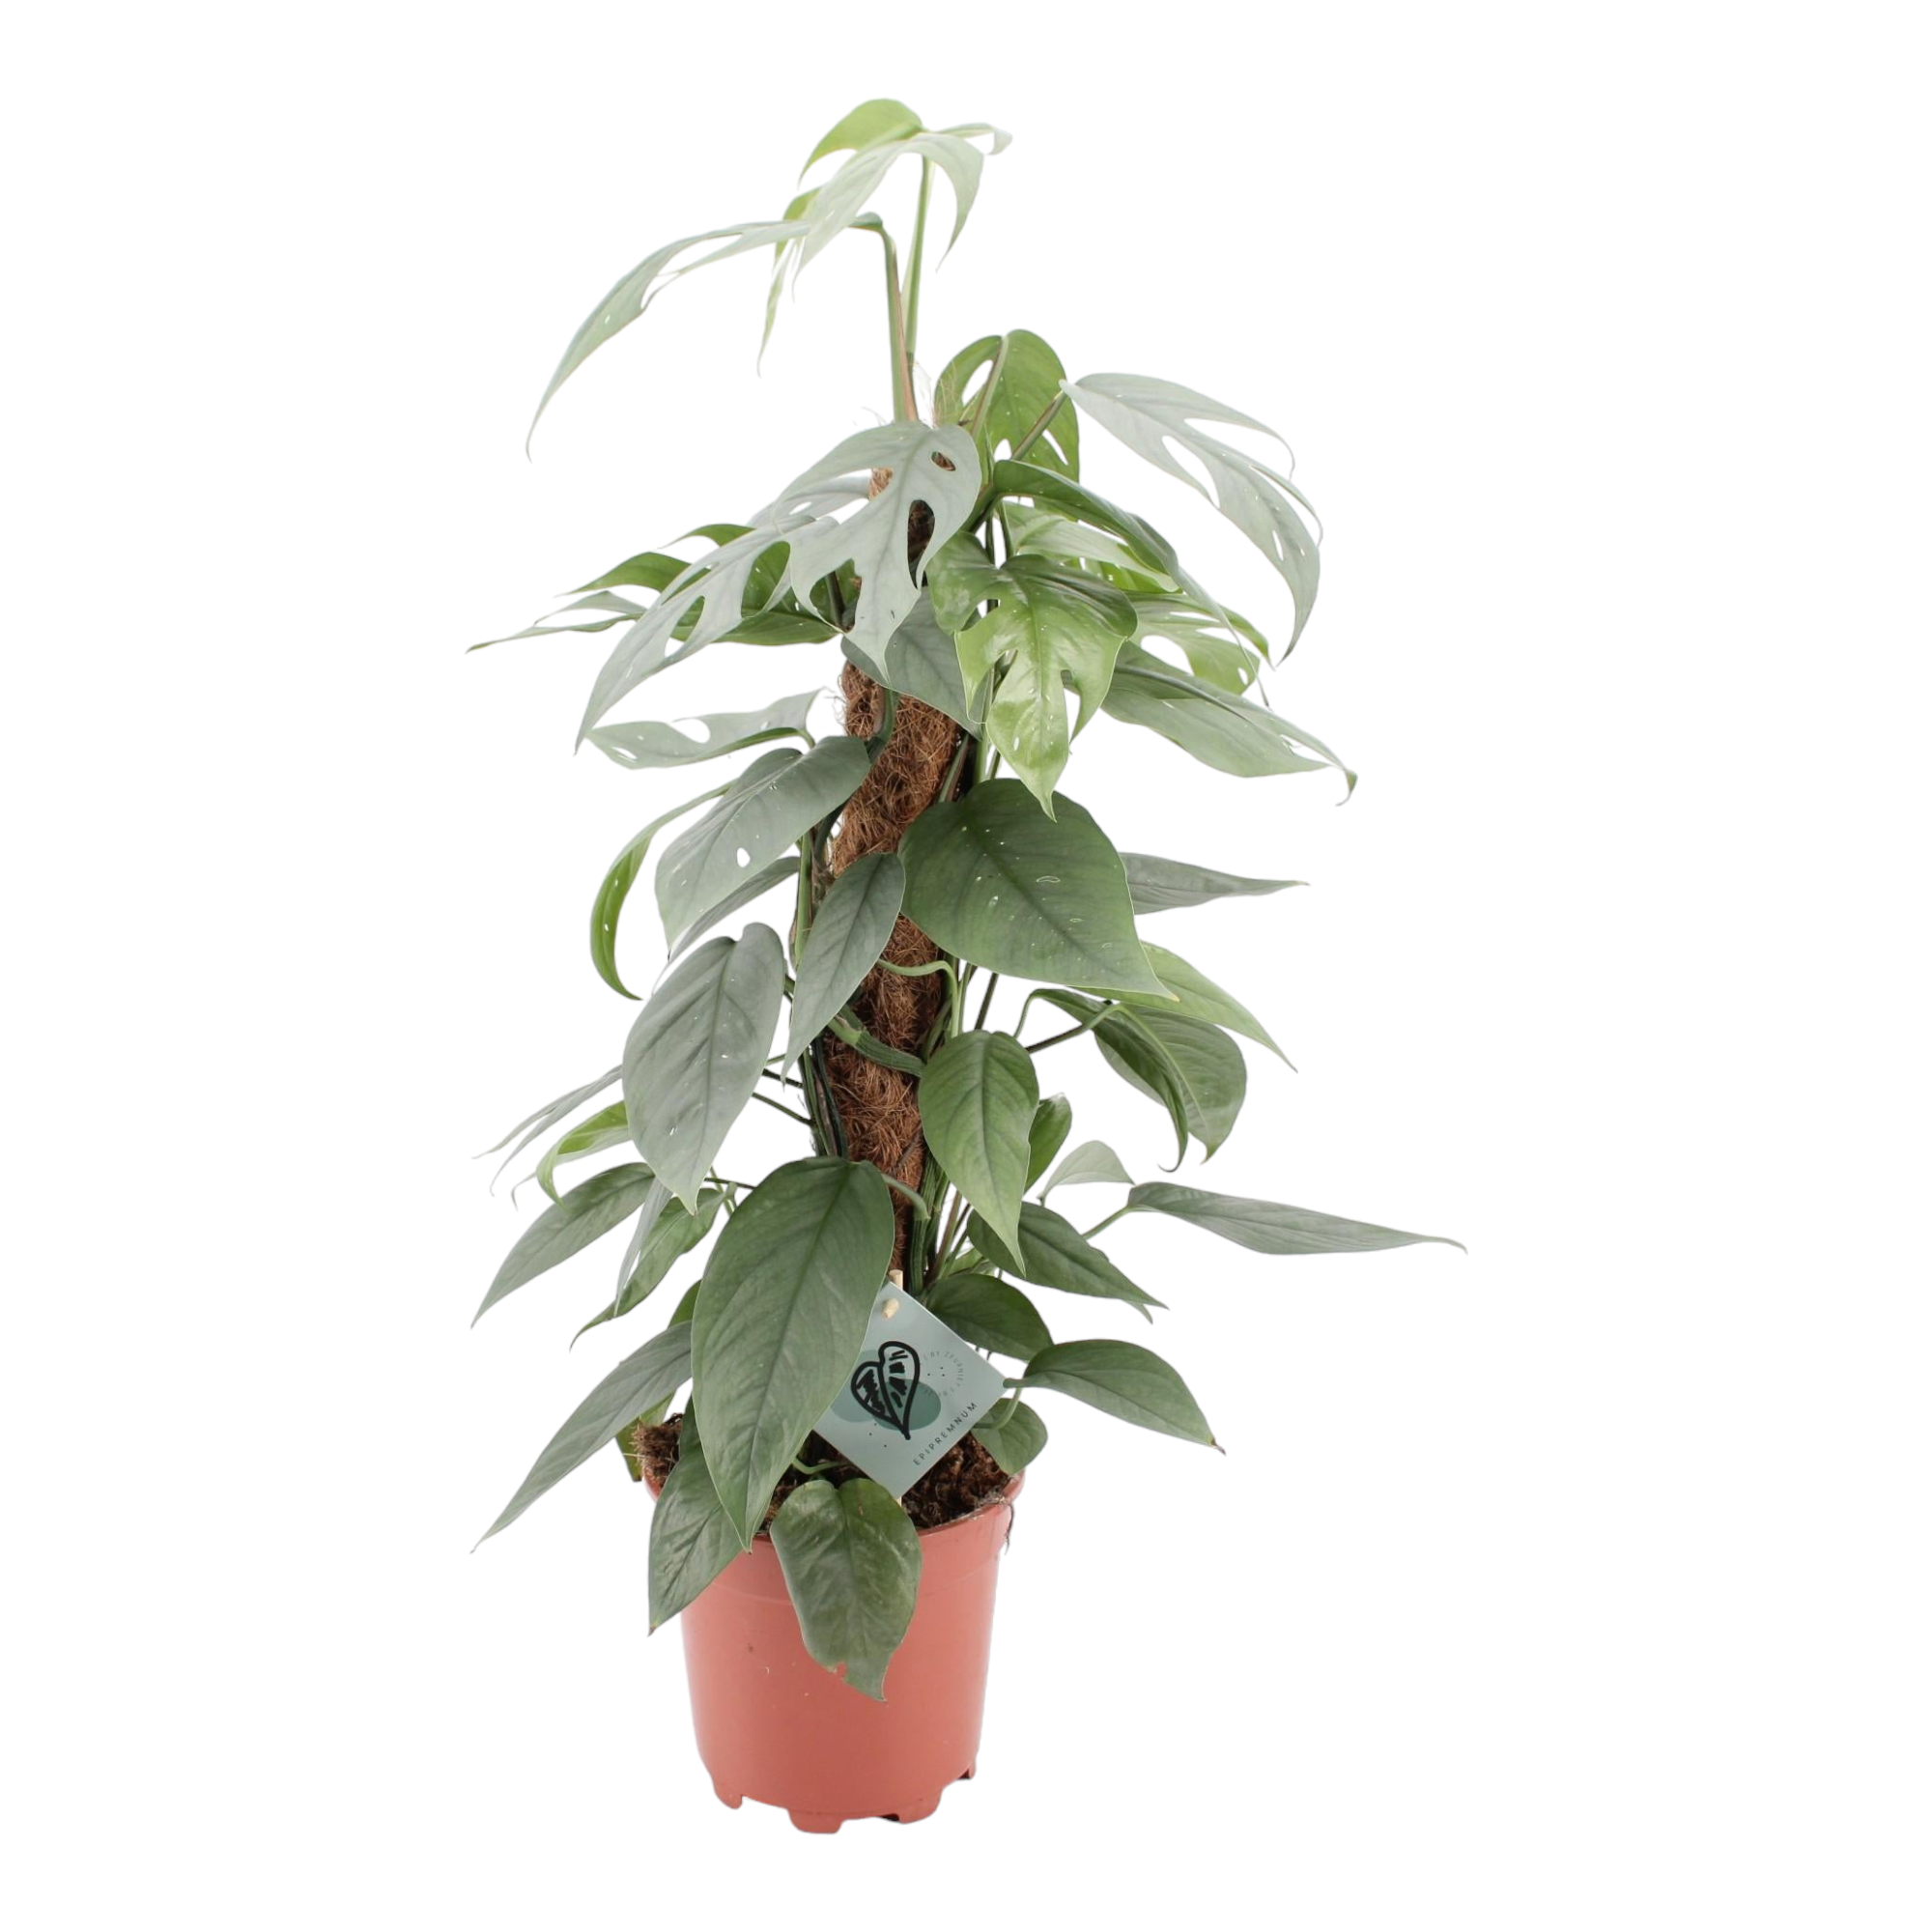 Huile protectrice pour plantes d'intérieur – La Green Touch